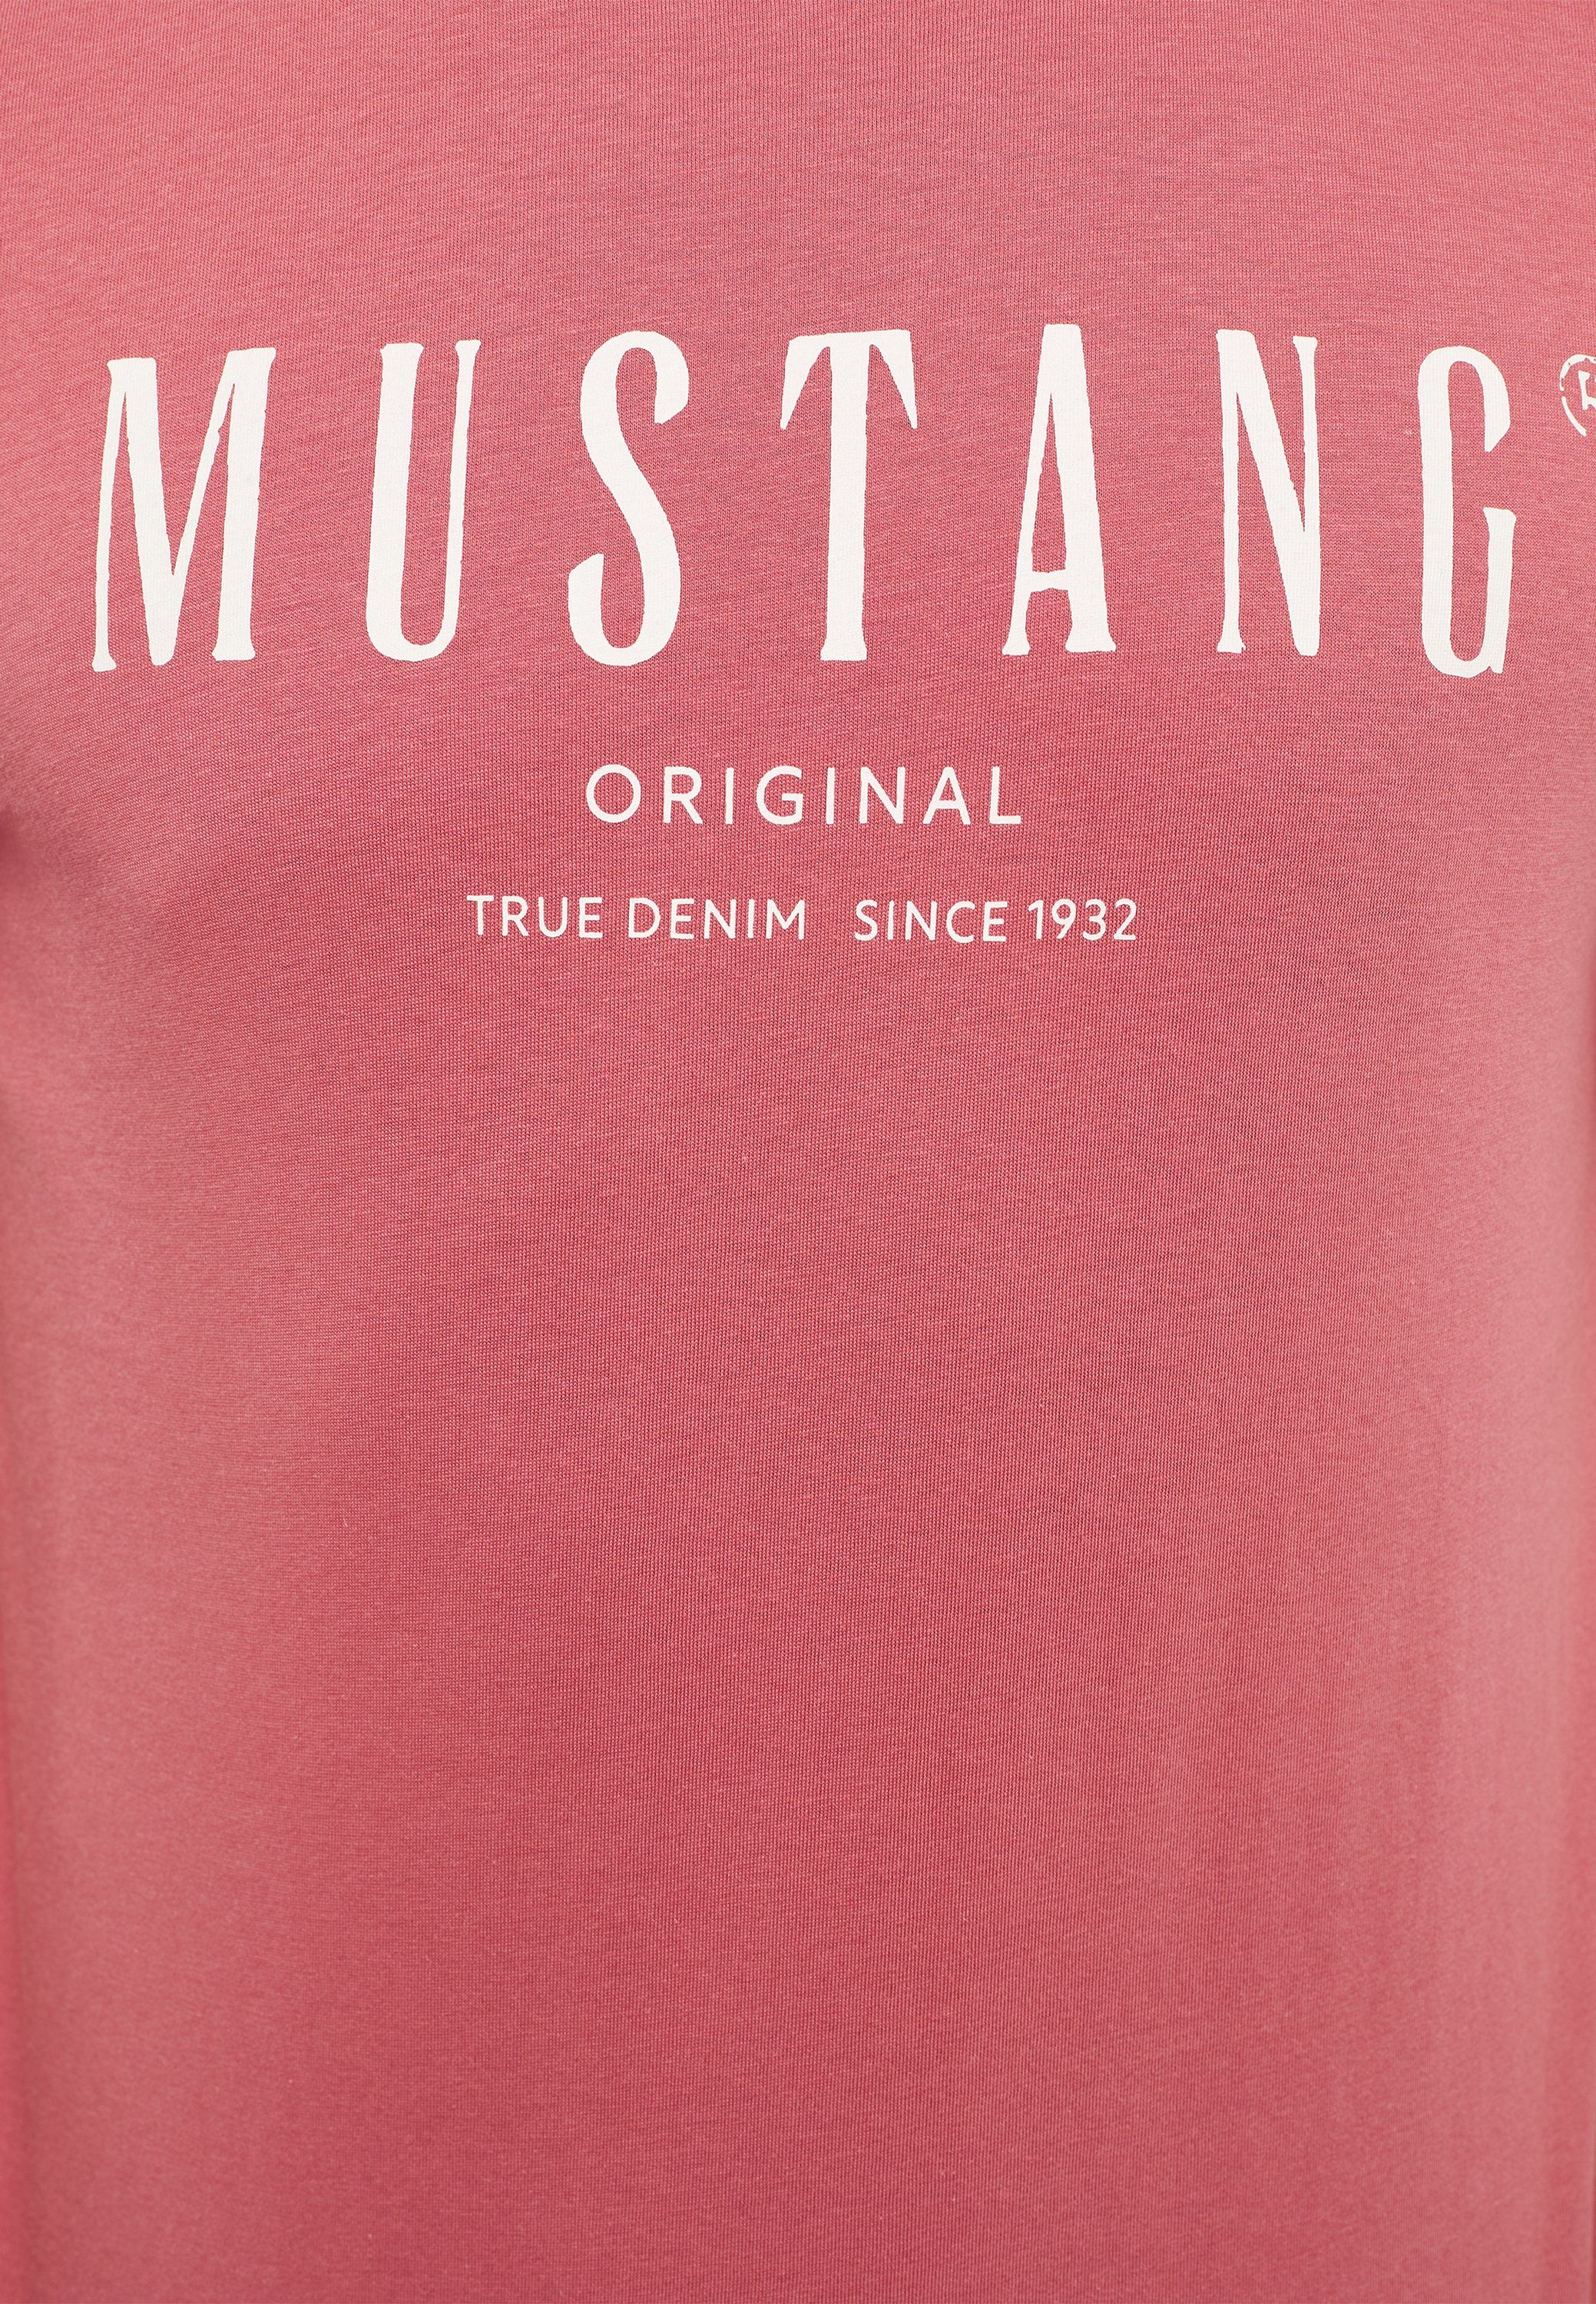 T-Shirt MUSTANG Kurzarmshirt Mustang hellrot